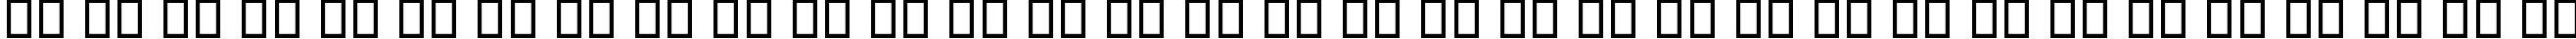 Пример написания русского алфавита шрифтом CloneWars